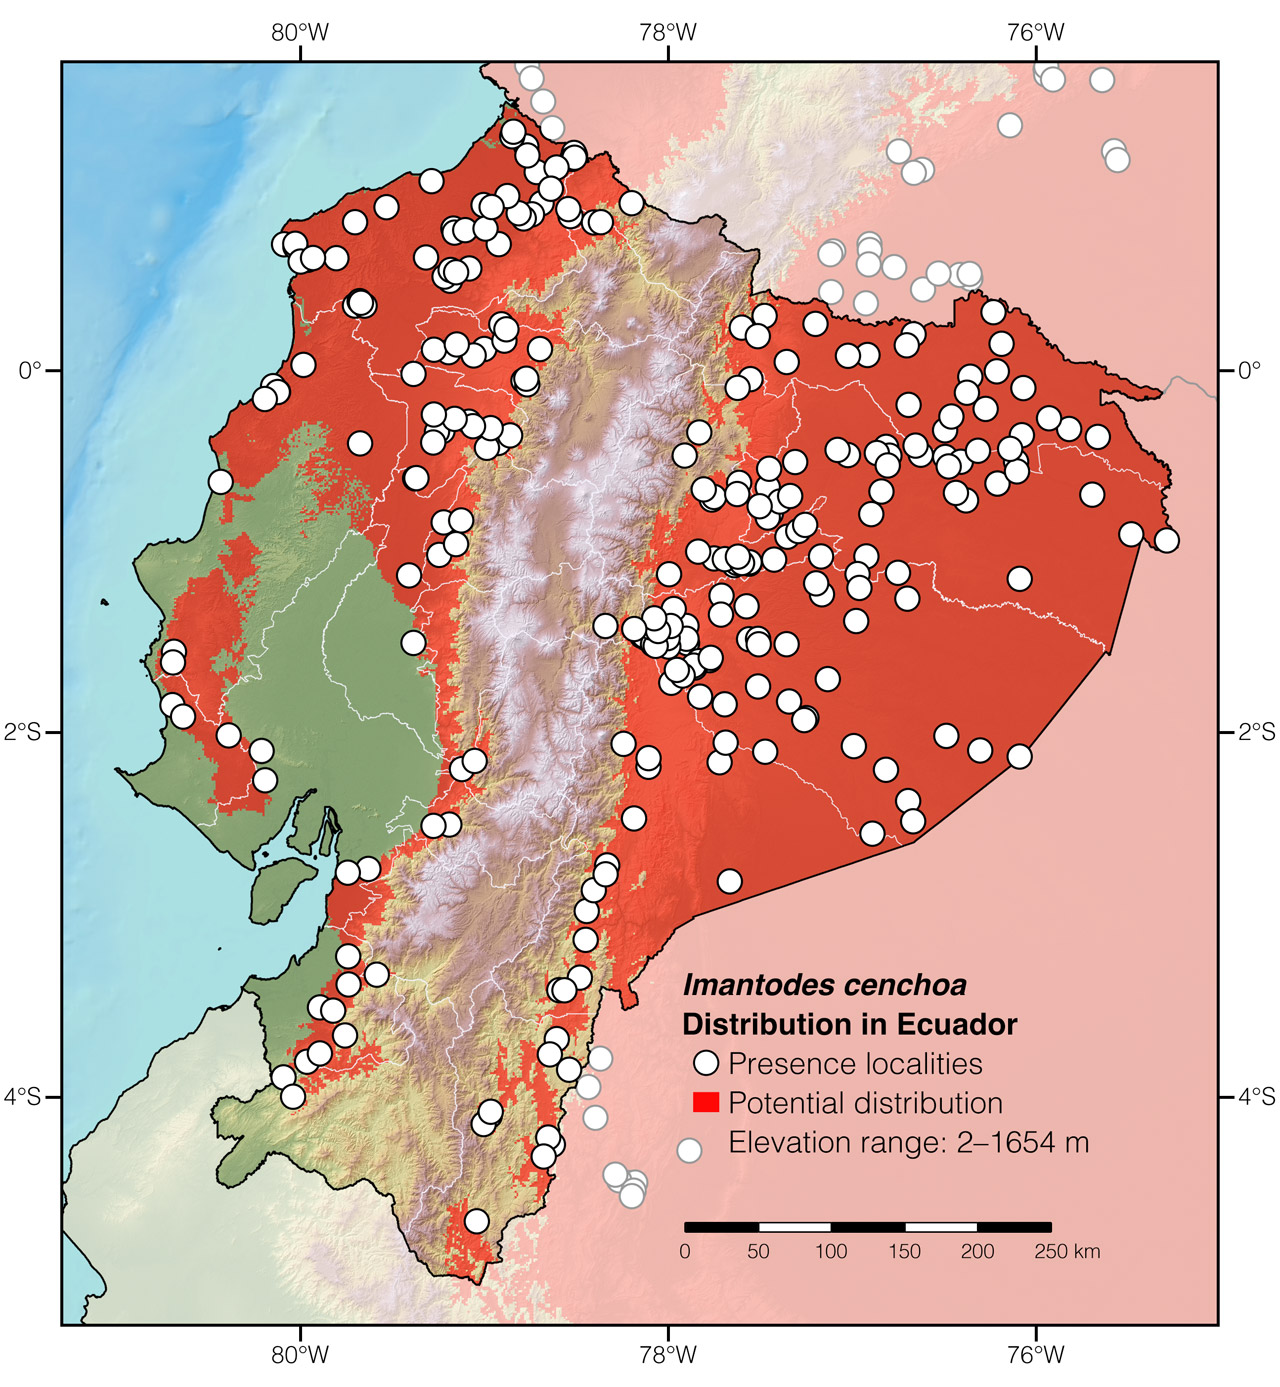 Distribution of Imantodes cenchoa in Ecuador